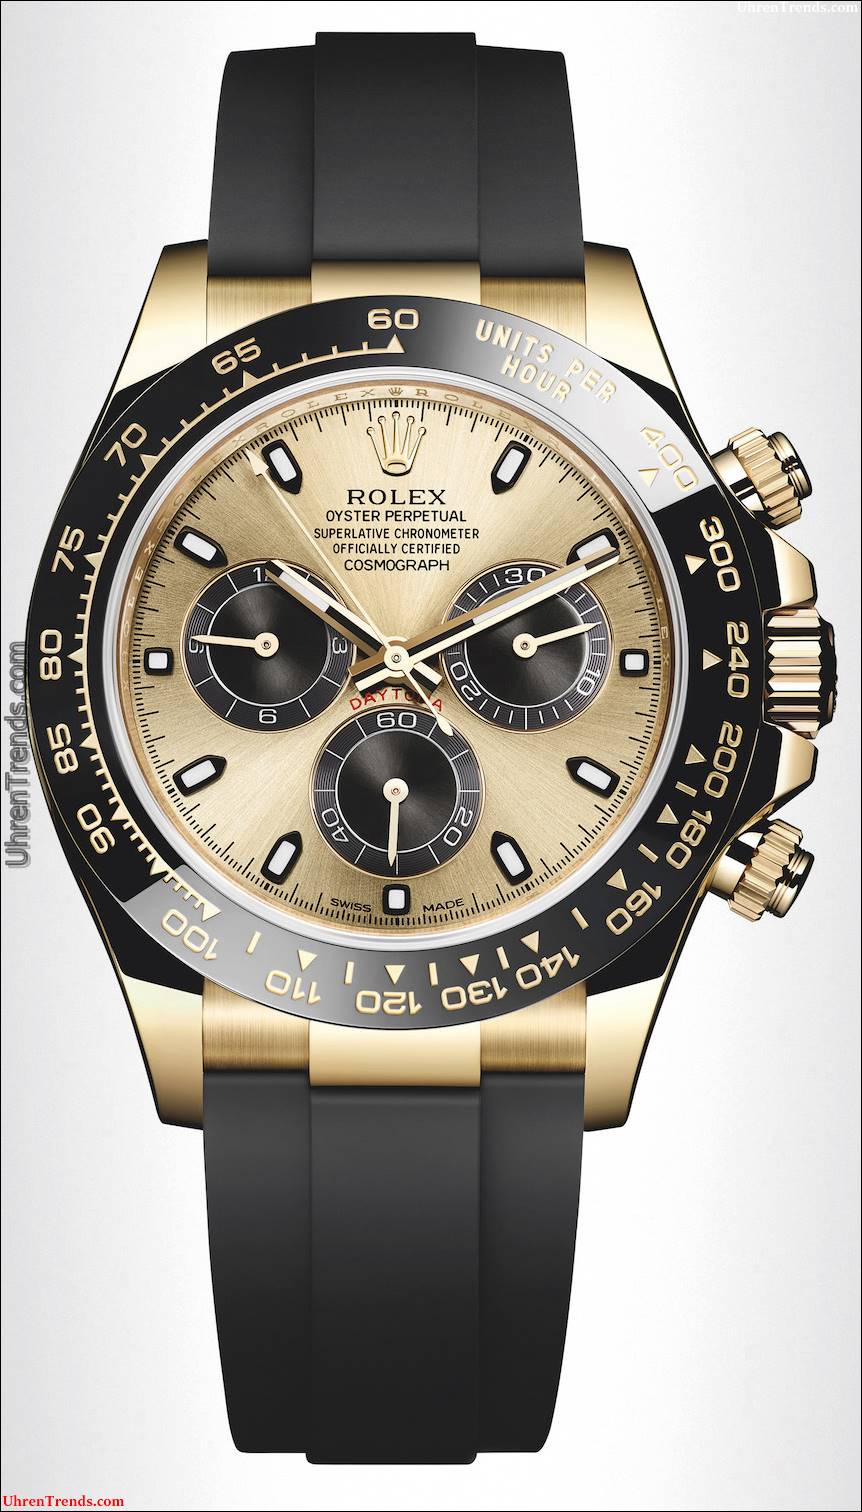 Neue Rolex Cosmograph Daytona Uhren in Gold mit Oysterflex Rubber Strap & Keramik Lünette für 2017  